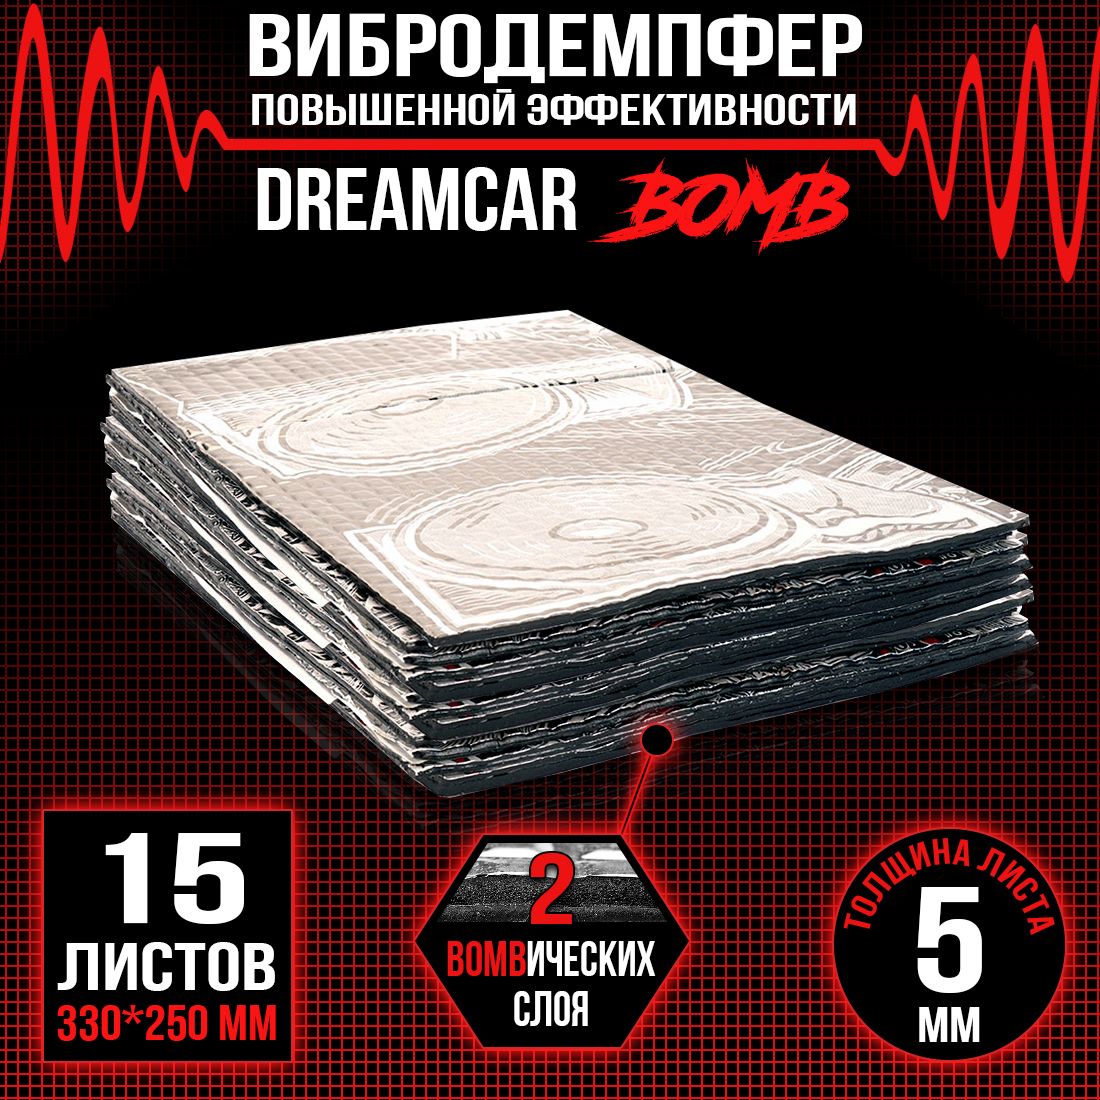 15 листов - Виброизоляция повышенного вибропоглощения c двойным слоем DreamCar Bomb 5мм 33х25см - 10 листов